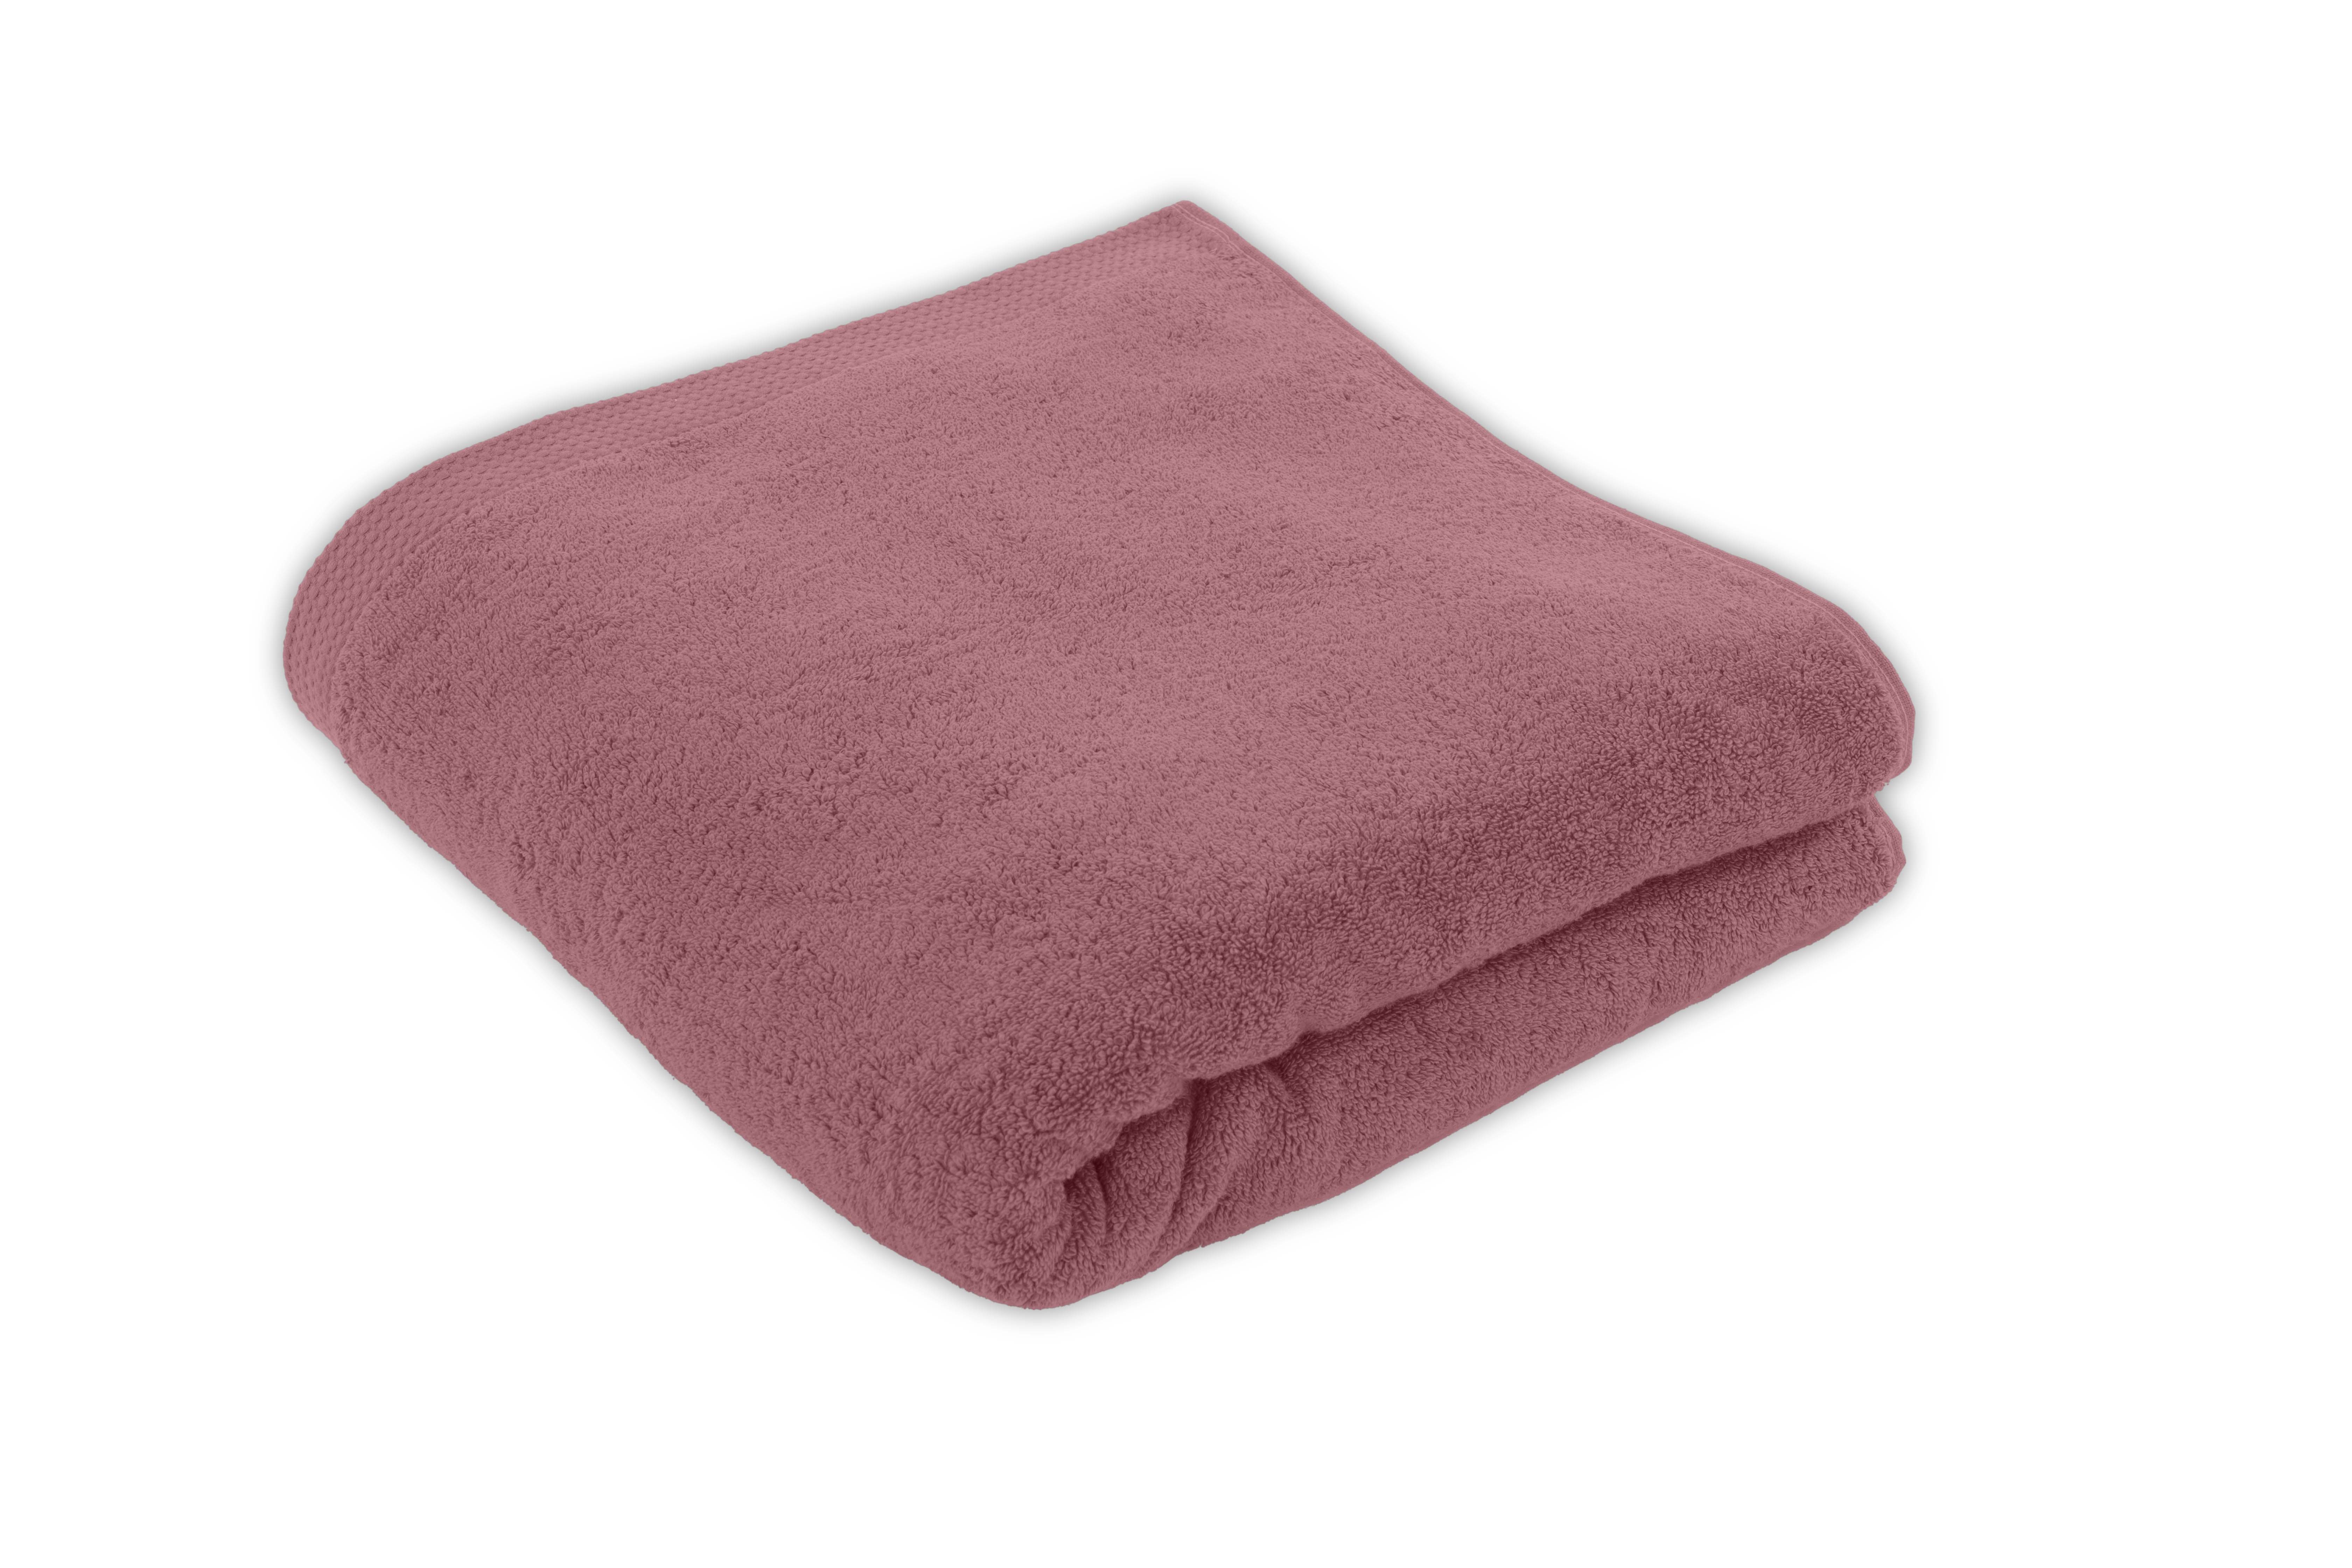 Shower towel DELUX 100x150cm, old pink